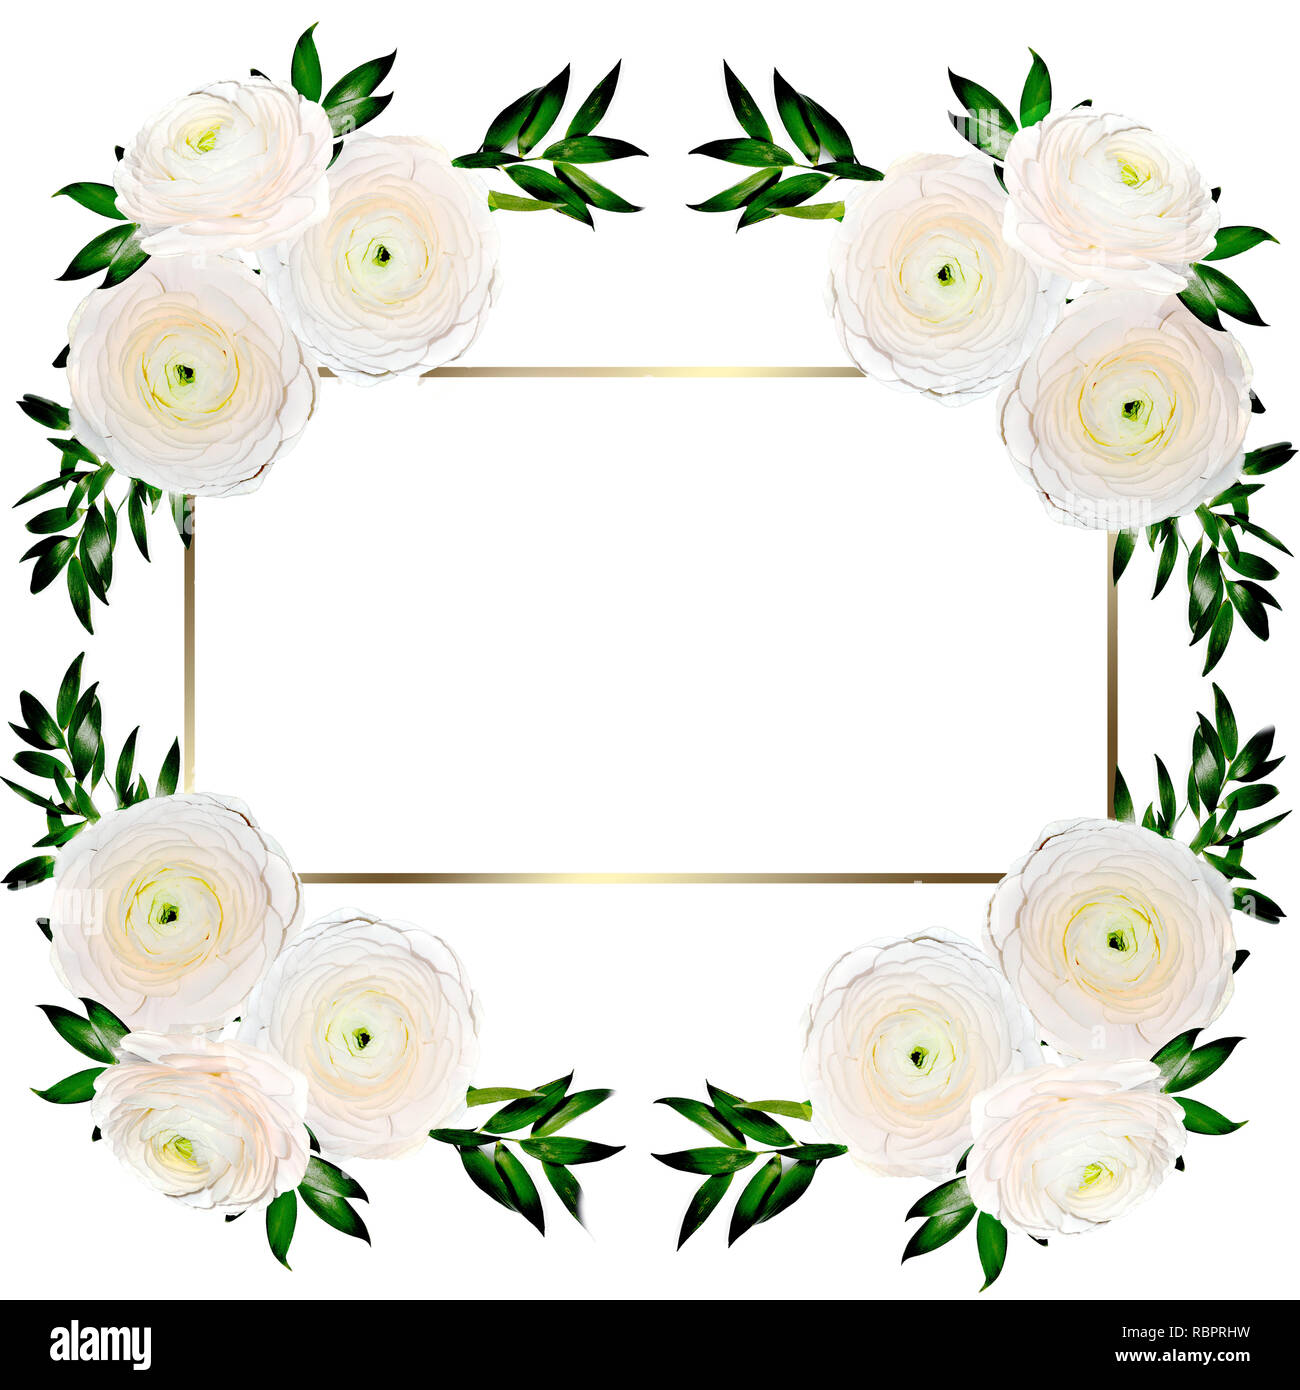 Mit zarten Blumenmustern Rahmen mit Creme-farbigen ranunculus Blumen isoliert auf Weiss. Design für die hochzeit einladung oder Grußkarte zum Geburtstag oder zu anderen Ho Stockfoto